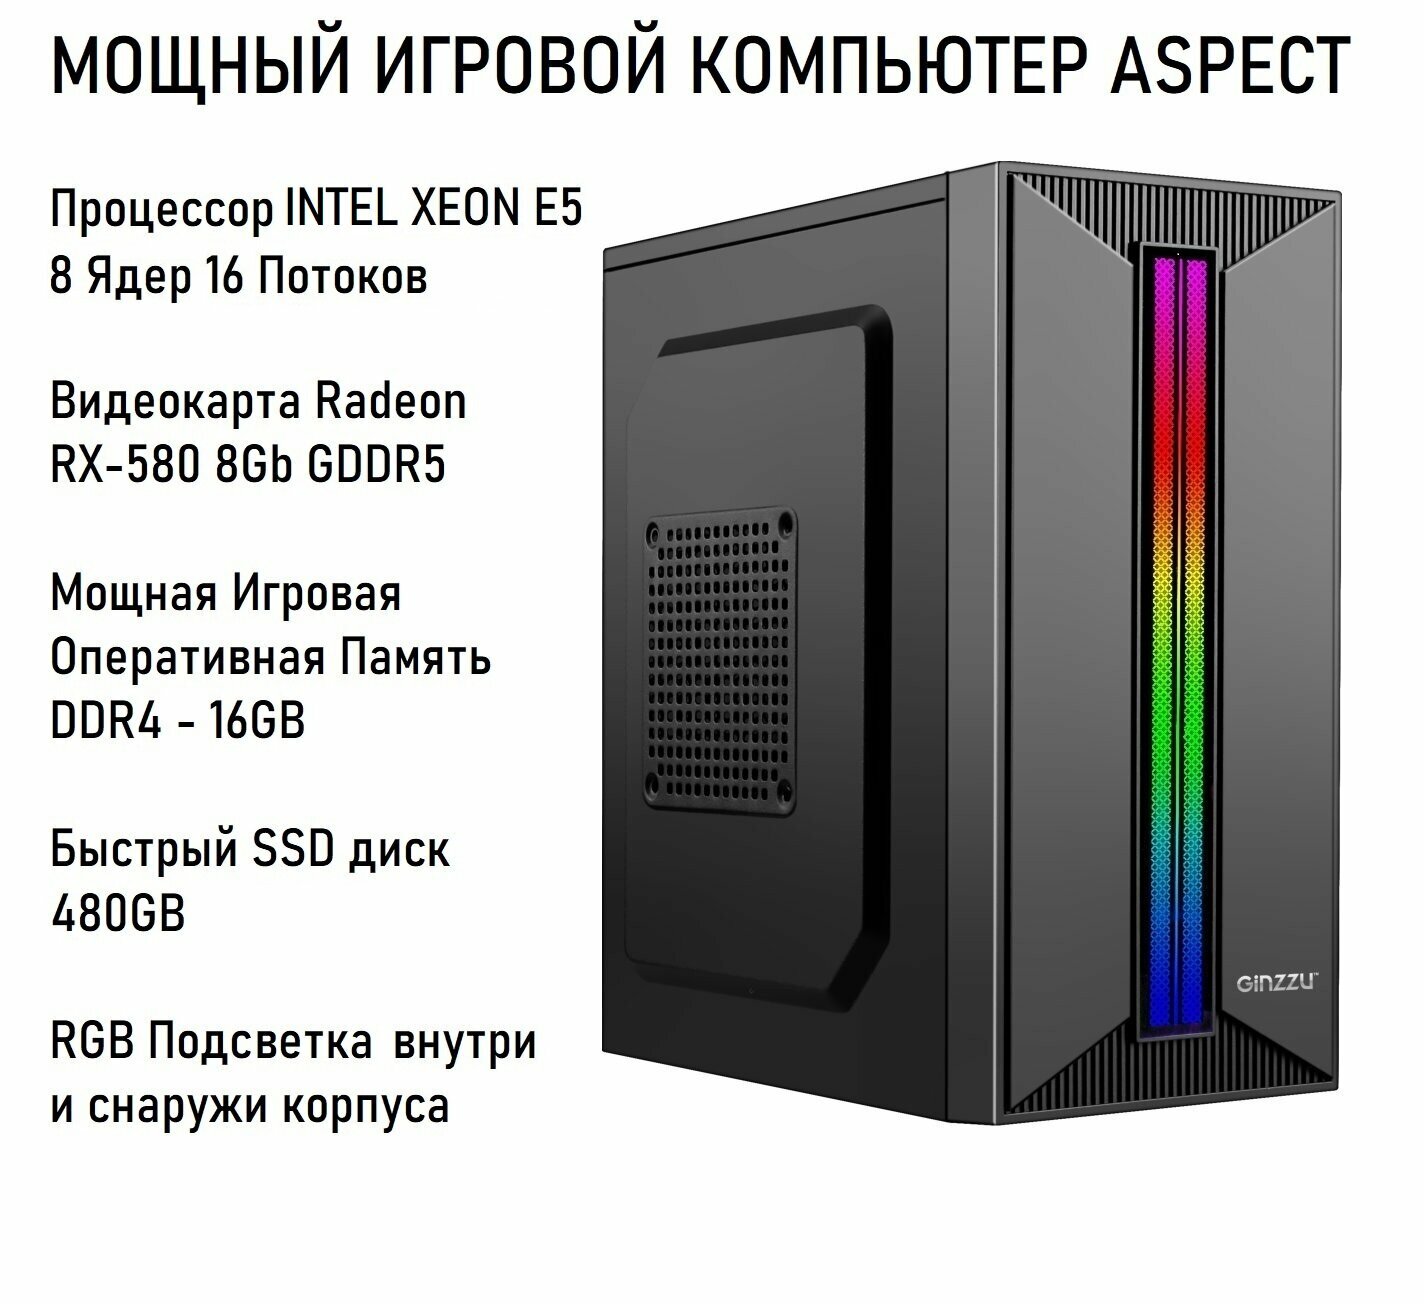 Мощный Игровой Компьютер ASPECT / Процессор Xeon E5 - 8 Ядер 16 Потоков / Игровая Видеокарта ATI Radeon RX560 8Gb GDDR5 / DDR4 - 16Gb / RGB Подсветка